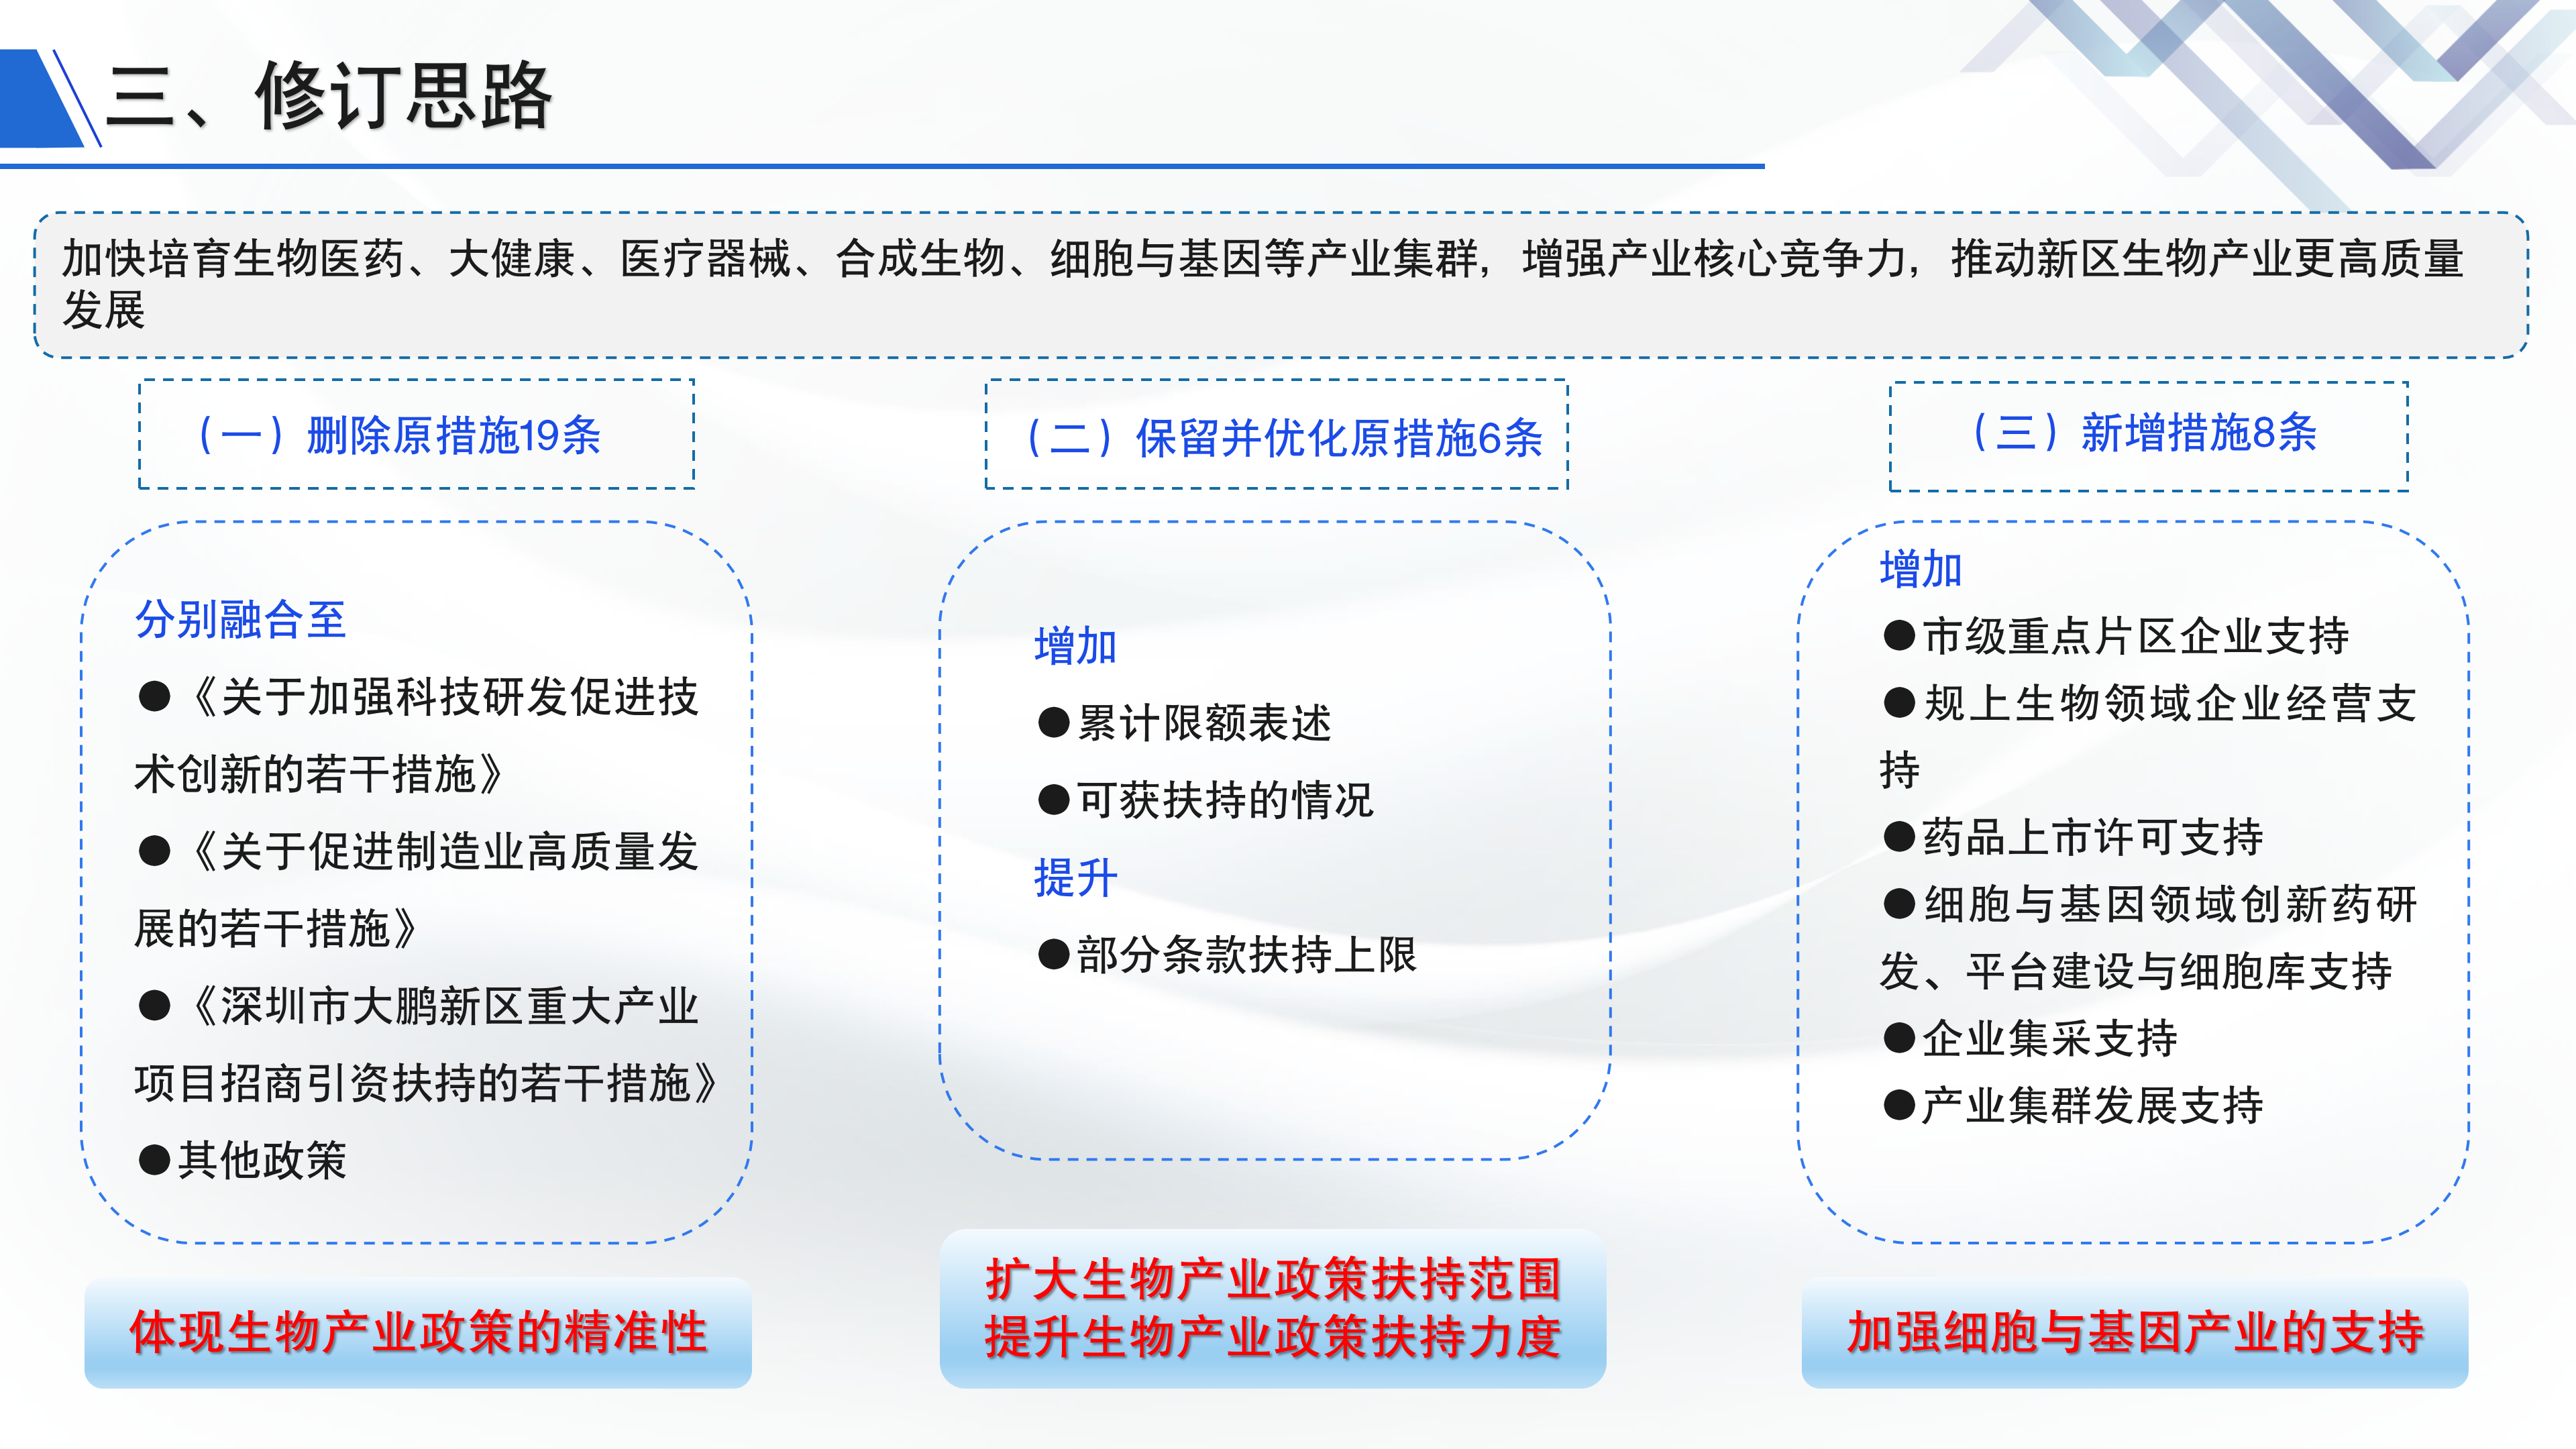 《深圳市大鹏新区关于促进生物产业发展的若干措施》政策解读_05.png